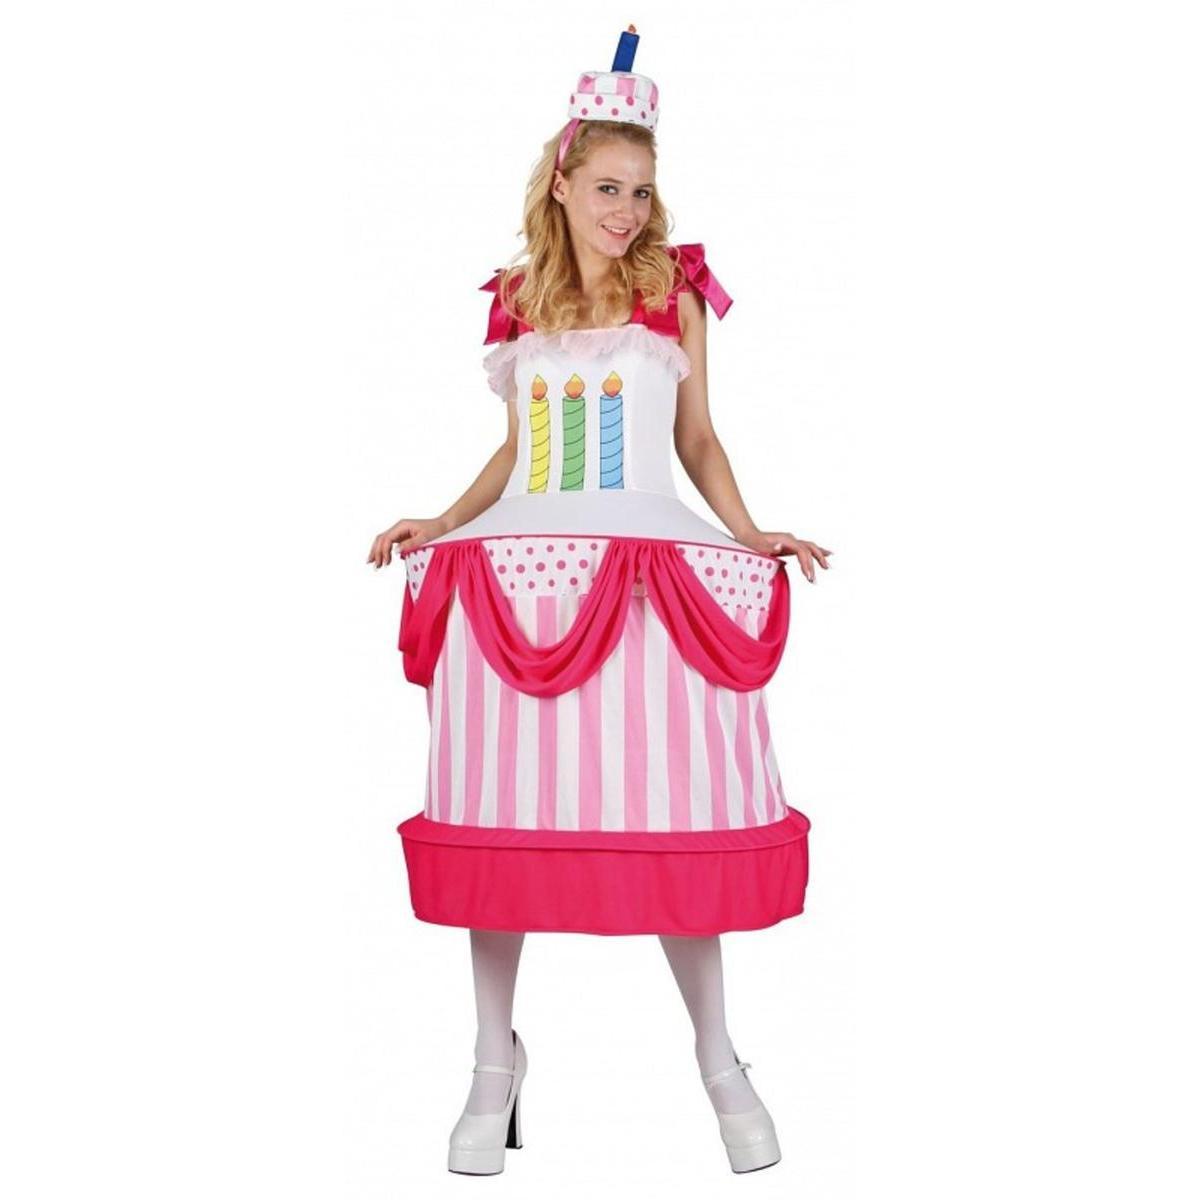 Costume femme Gâteau d'anniversaire en polyester - Taille unique - Multicolore